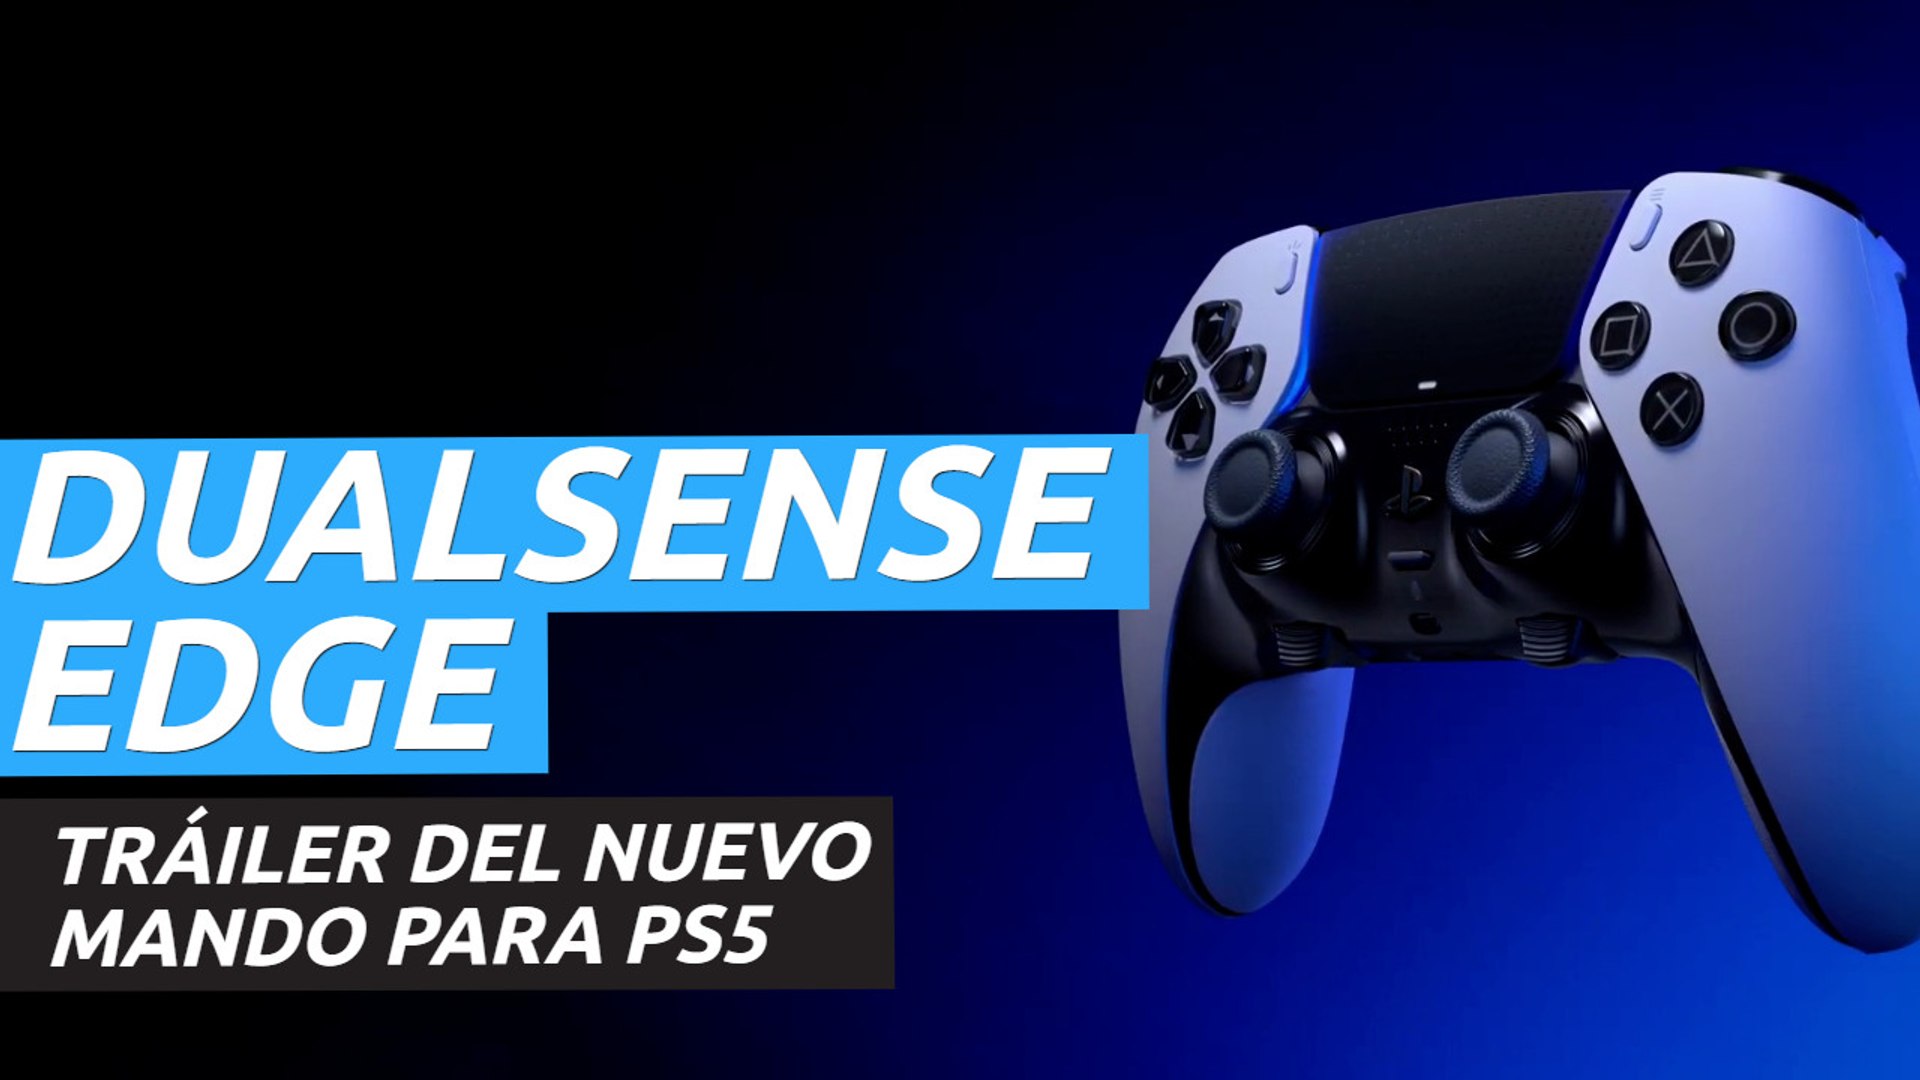 DualSense Edge para PS5 - Tráiler del mando inalámbrico - Vídeo Dailymotion